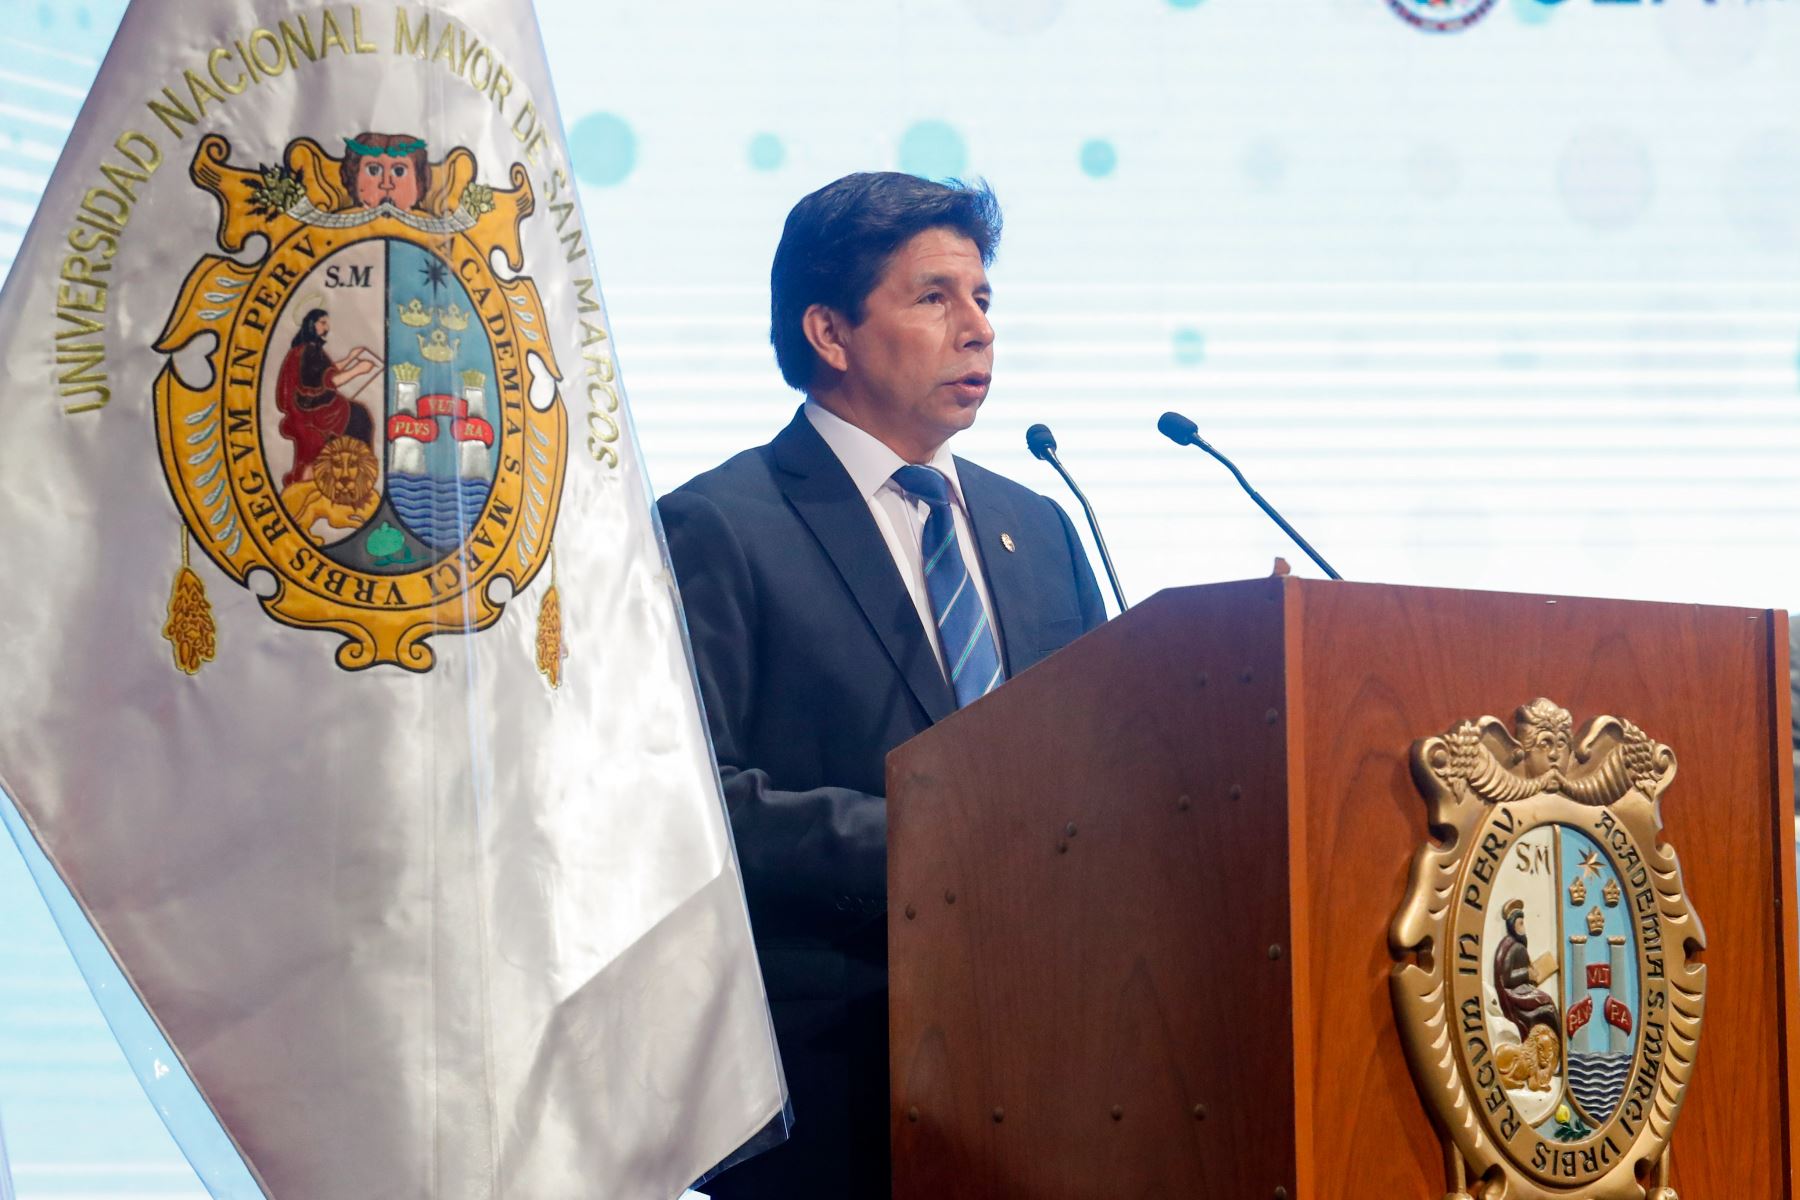 El presidente de la República, Pedro Castillo Terrones, inauguró el I Encuentro de Jóvenes de las Américas: Perú 2022, que congrega a más de 400 jóvenes, en el marco de la próxima apertura de la 52° Asamblea General de la OEA. Foto: ANDINA/Prensa Presidencia